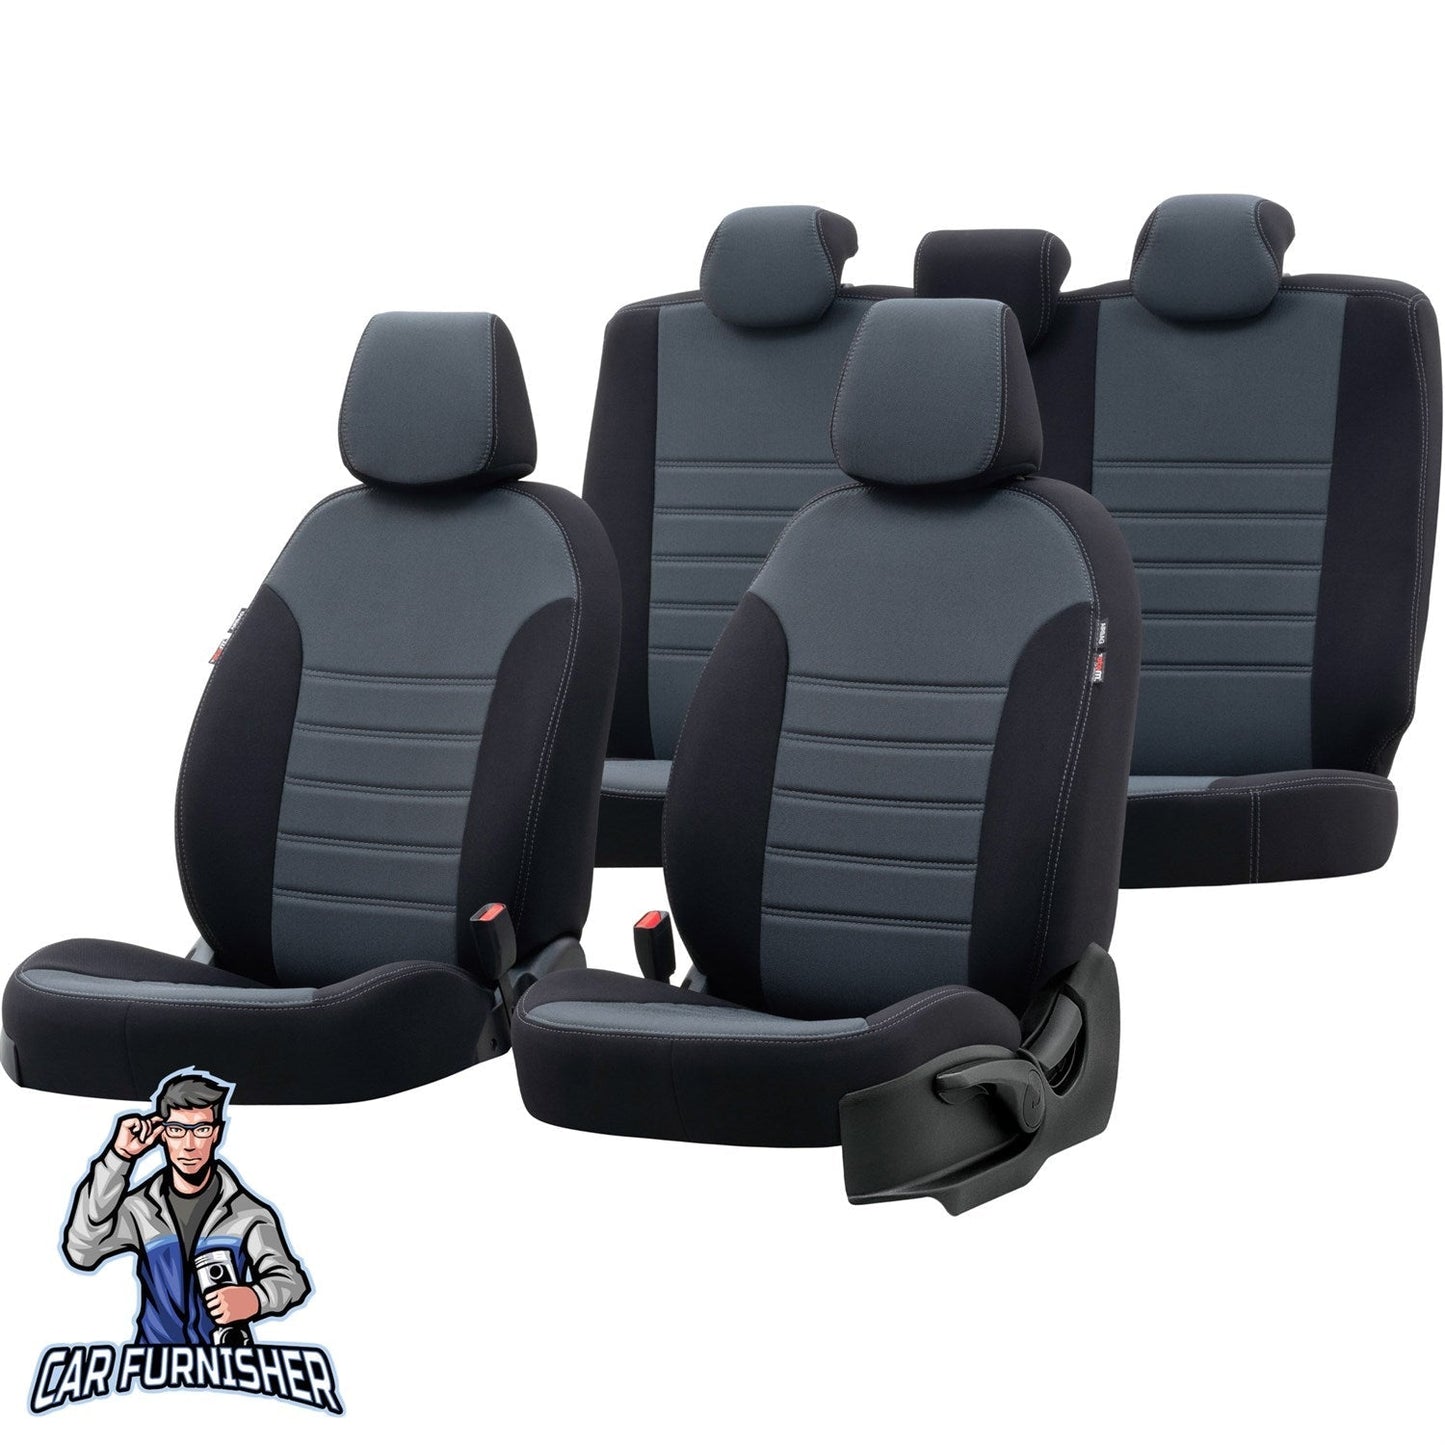 Daihatsu Materia Seat Covers Original Jacquard Design Smoked Black Jacquard Fabric